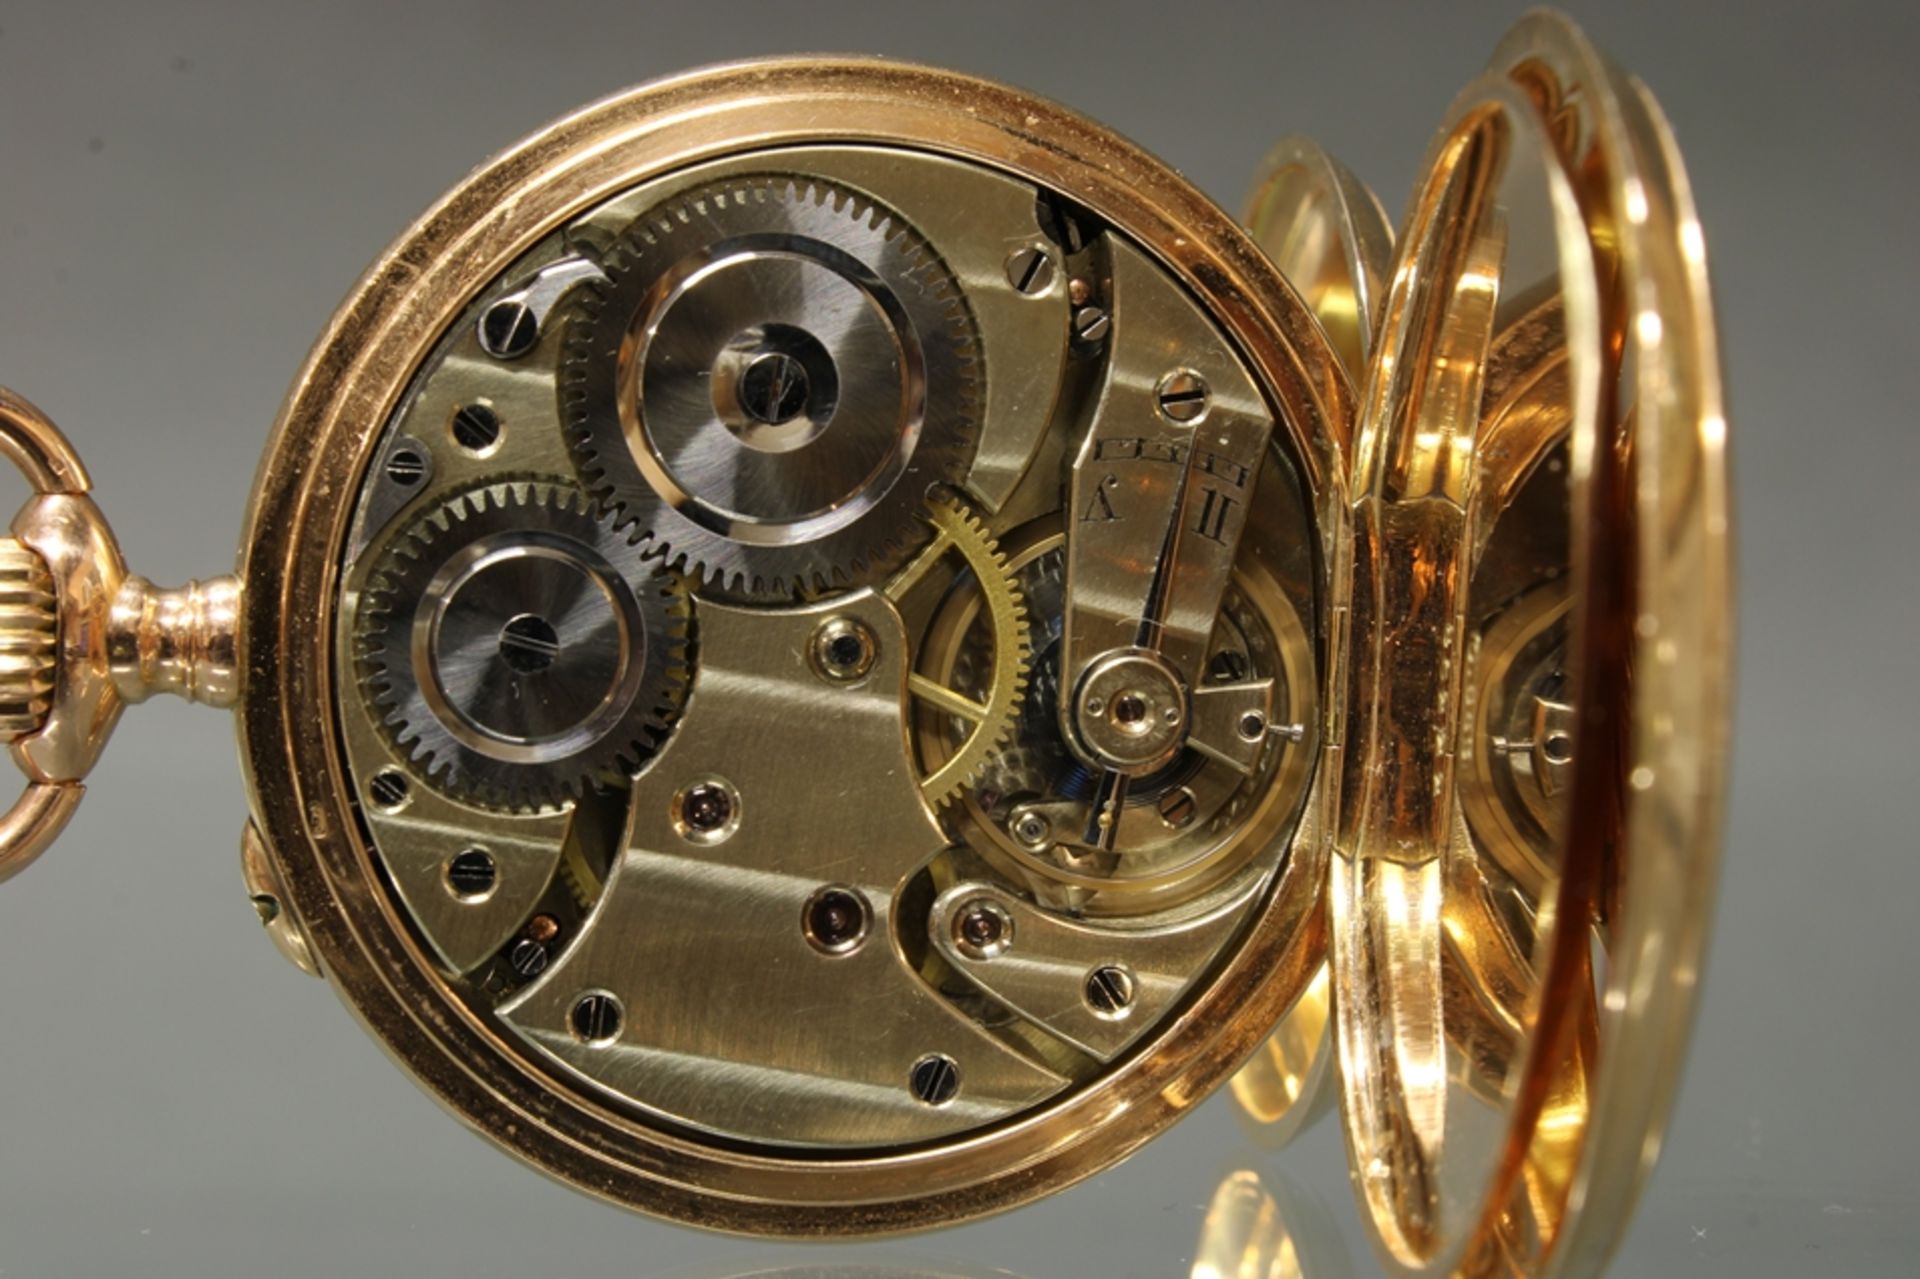 Herrentaschenuhr, Savonette, Russland, um 1900, Geschenkuhr des Zaren Nikolaus II, Uhrmacher Pavel  - Bild 3 aus 6